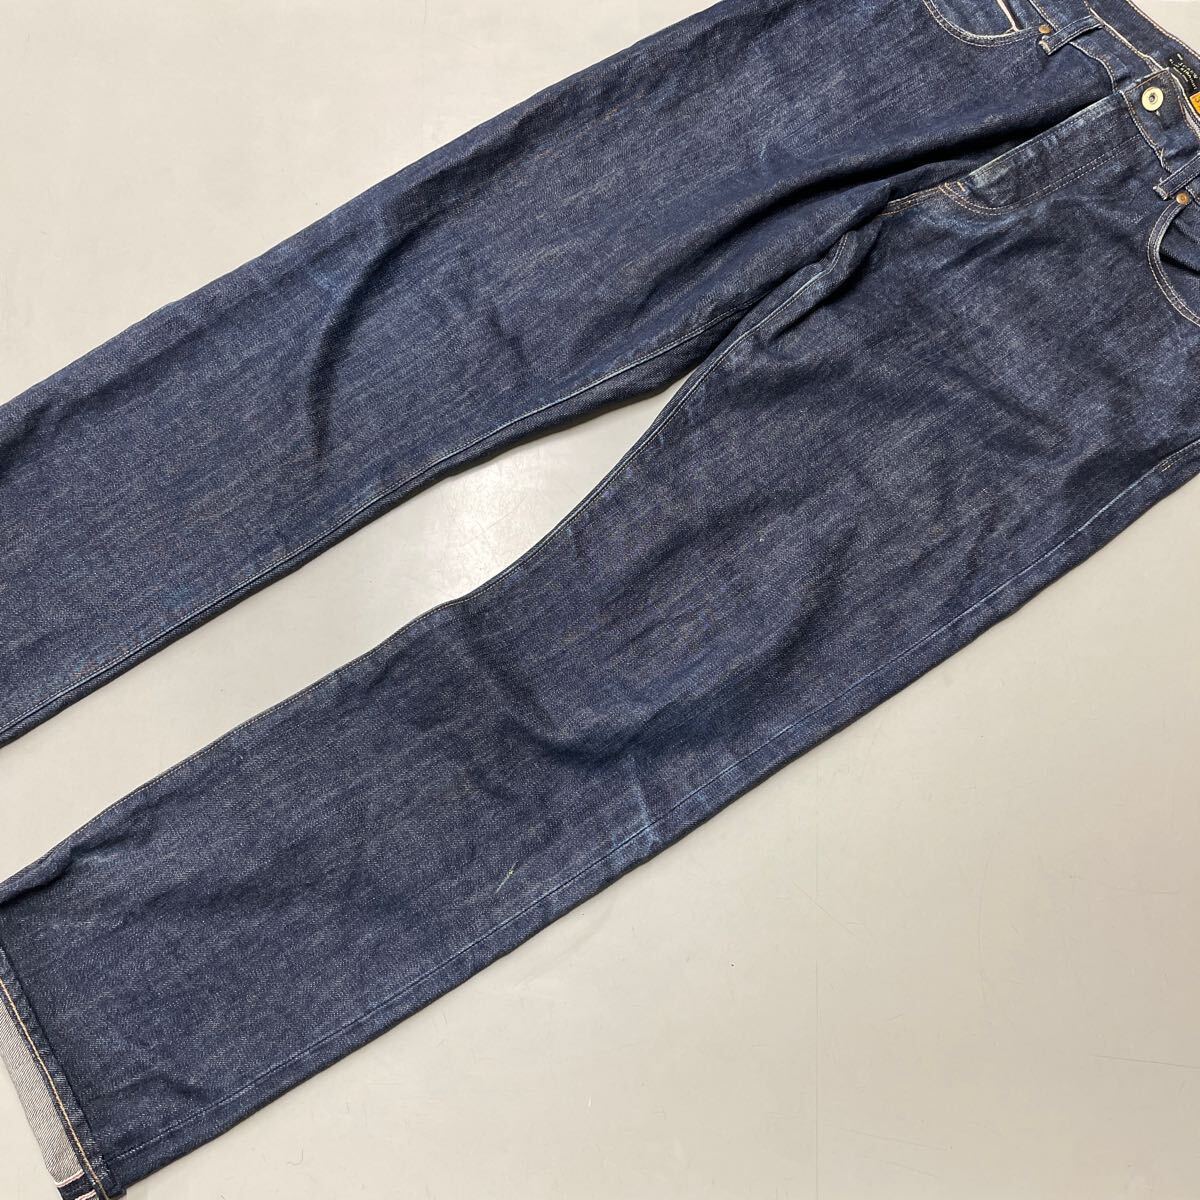  J Crew J.CREW jeans Denim pants 34 -inch men's slim strut SLIM STRAIGHT cell biji red ear bottom 